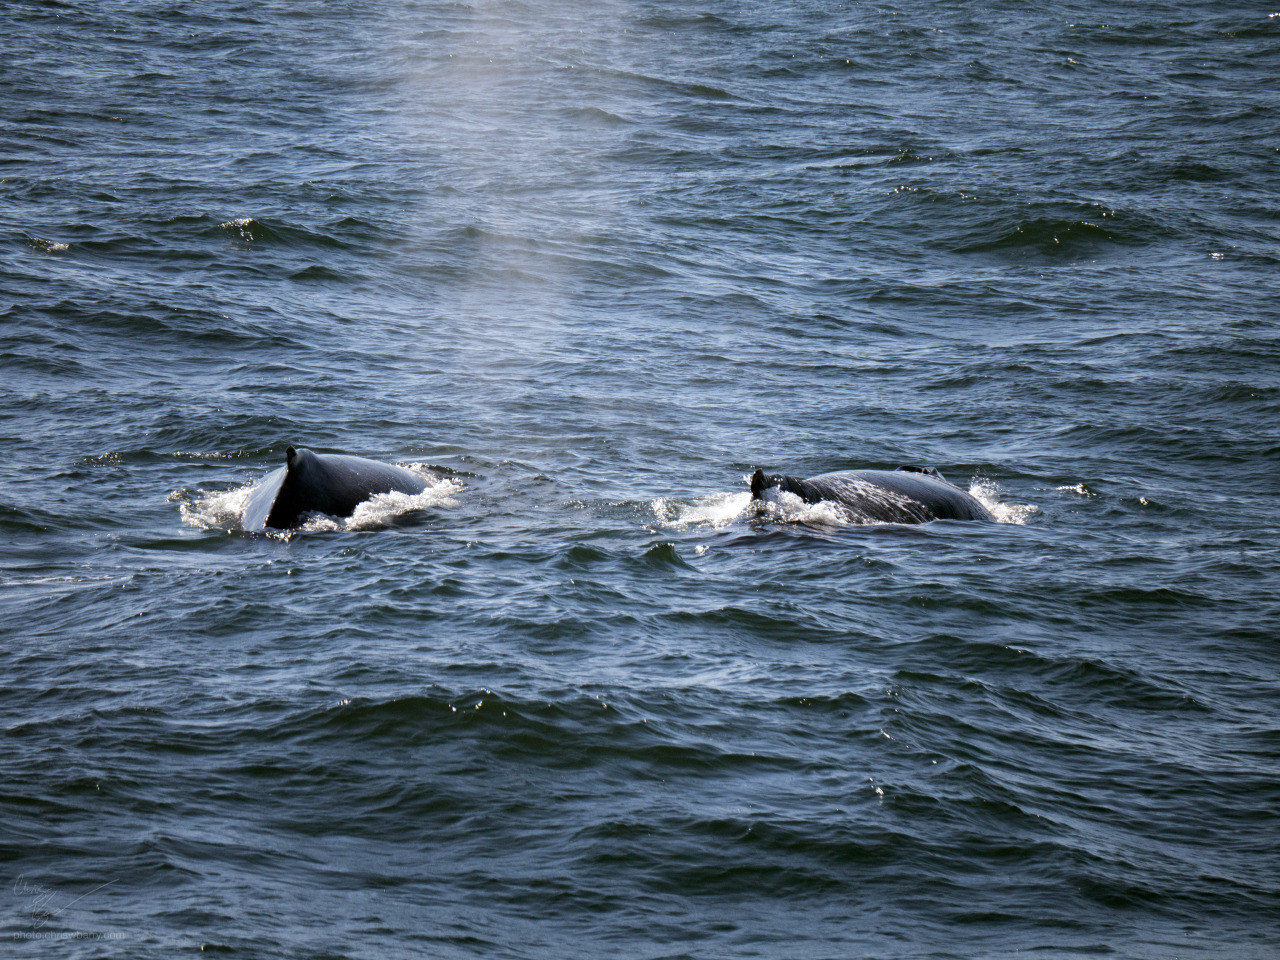 9-2-16: Humpback Whale ("Etch-a-sketch") and calf